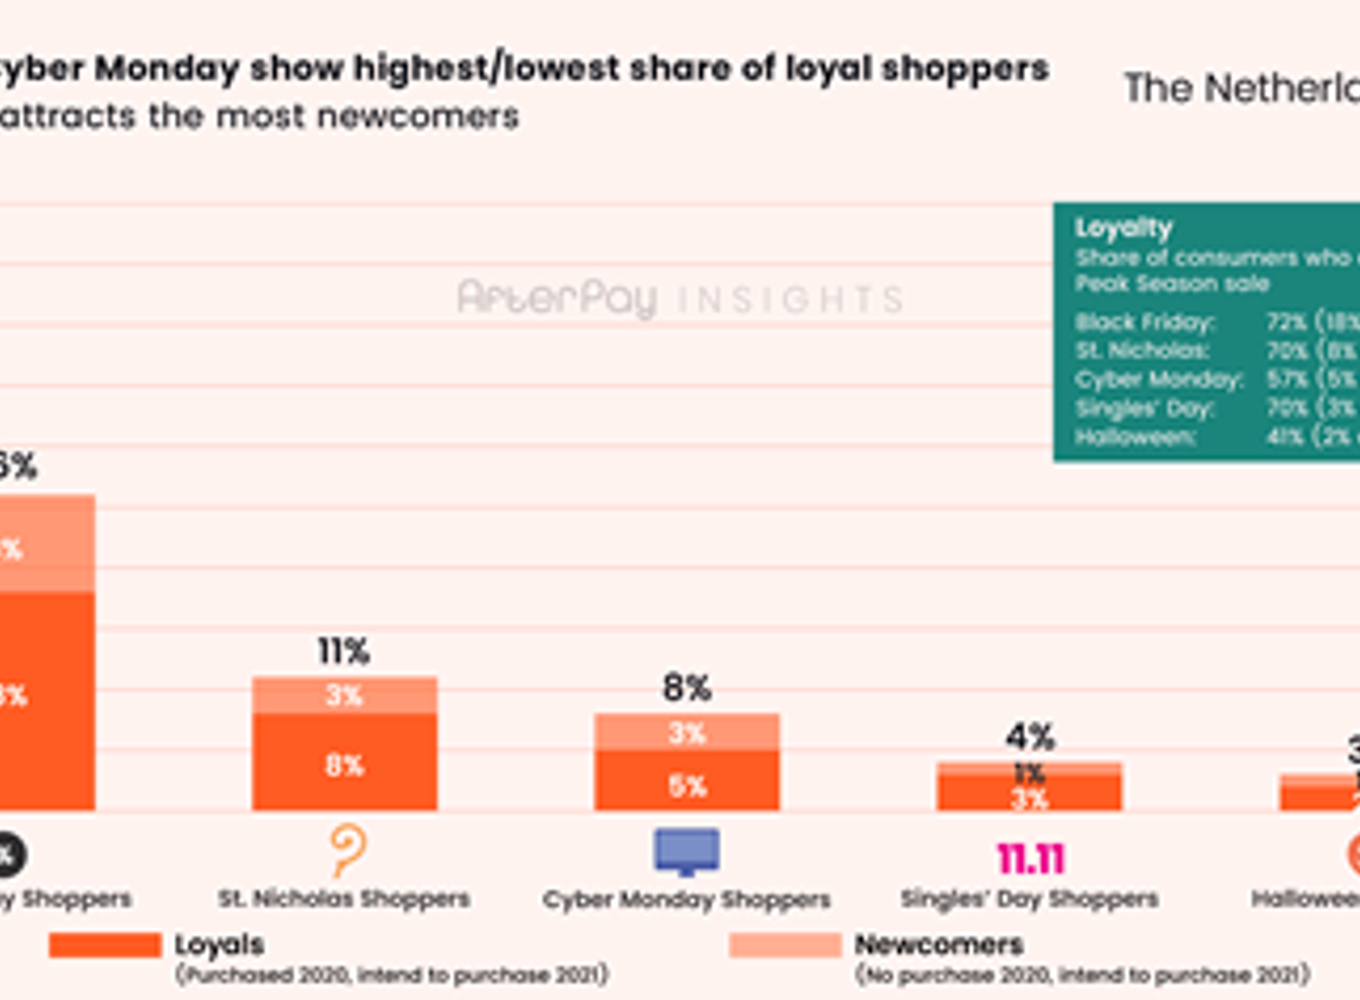 Het aandeel van consumenten dat graag winkelt tijdens sale.